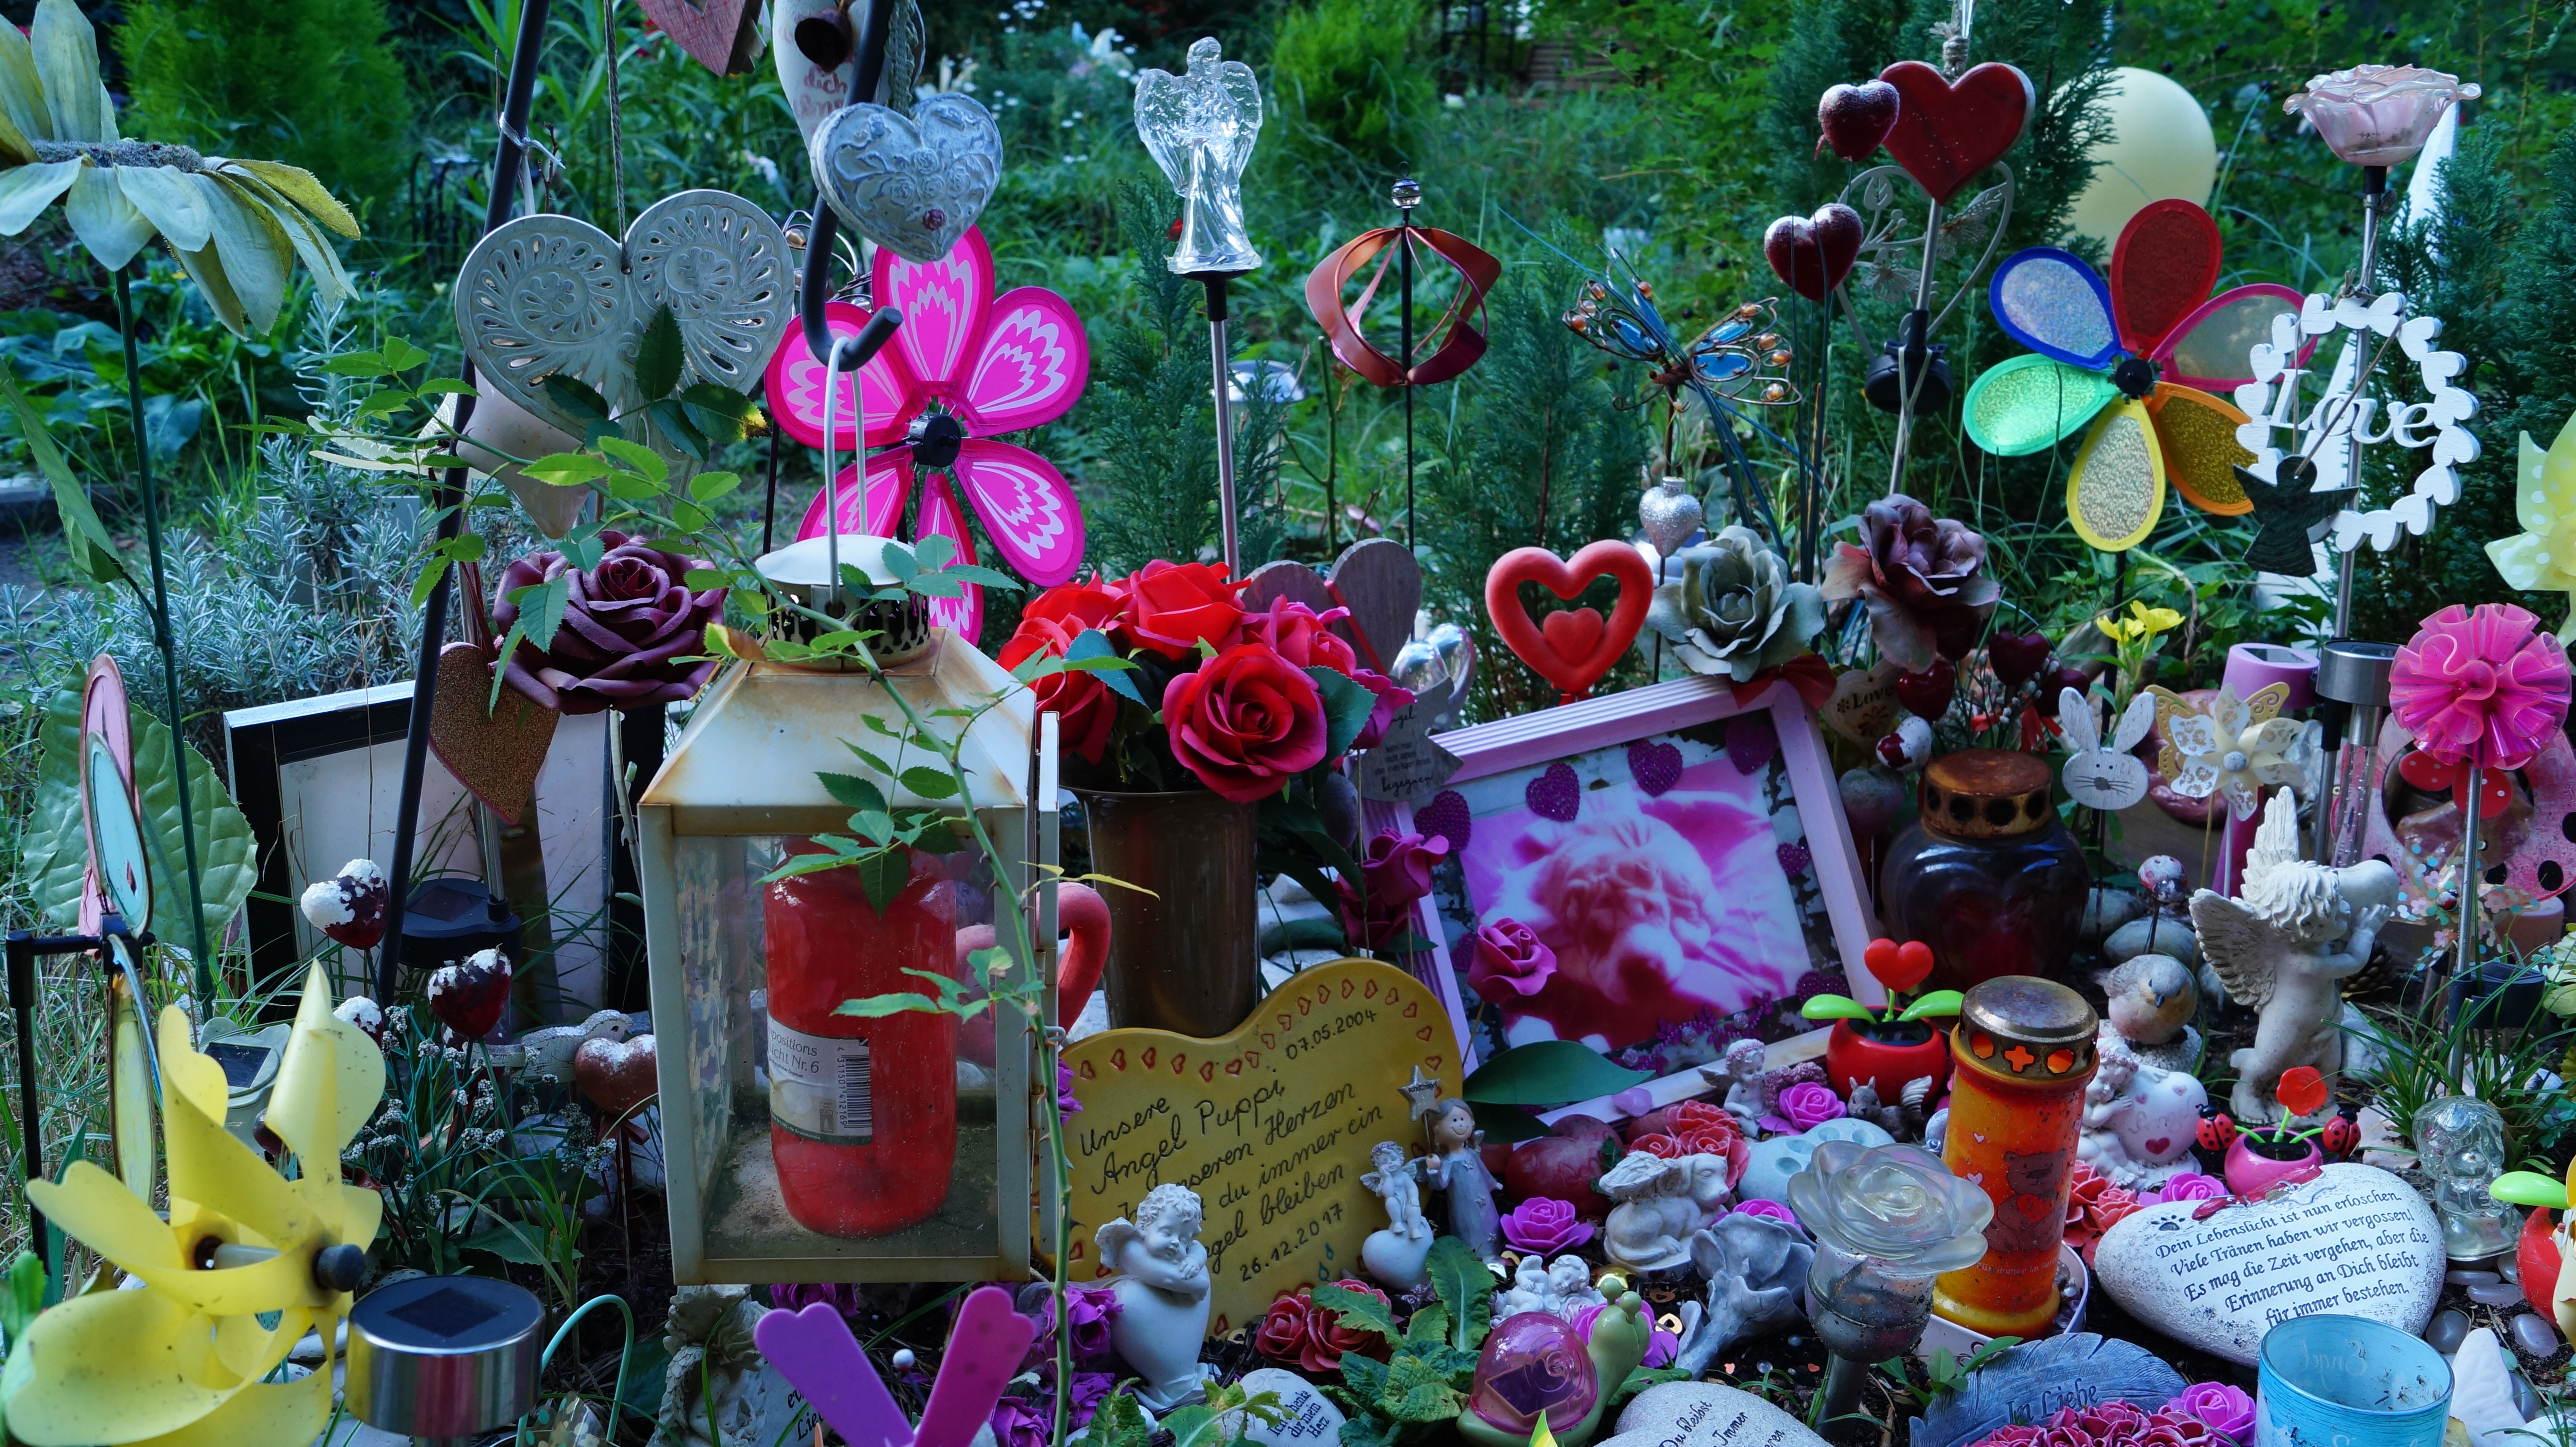 Tiergrabstätte, geschmückt mit Blumen, eingerahmten Fotografien, Kerzen und bunten Objekten.